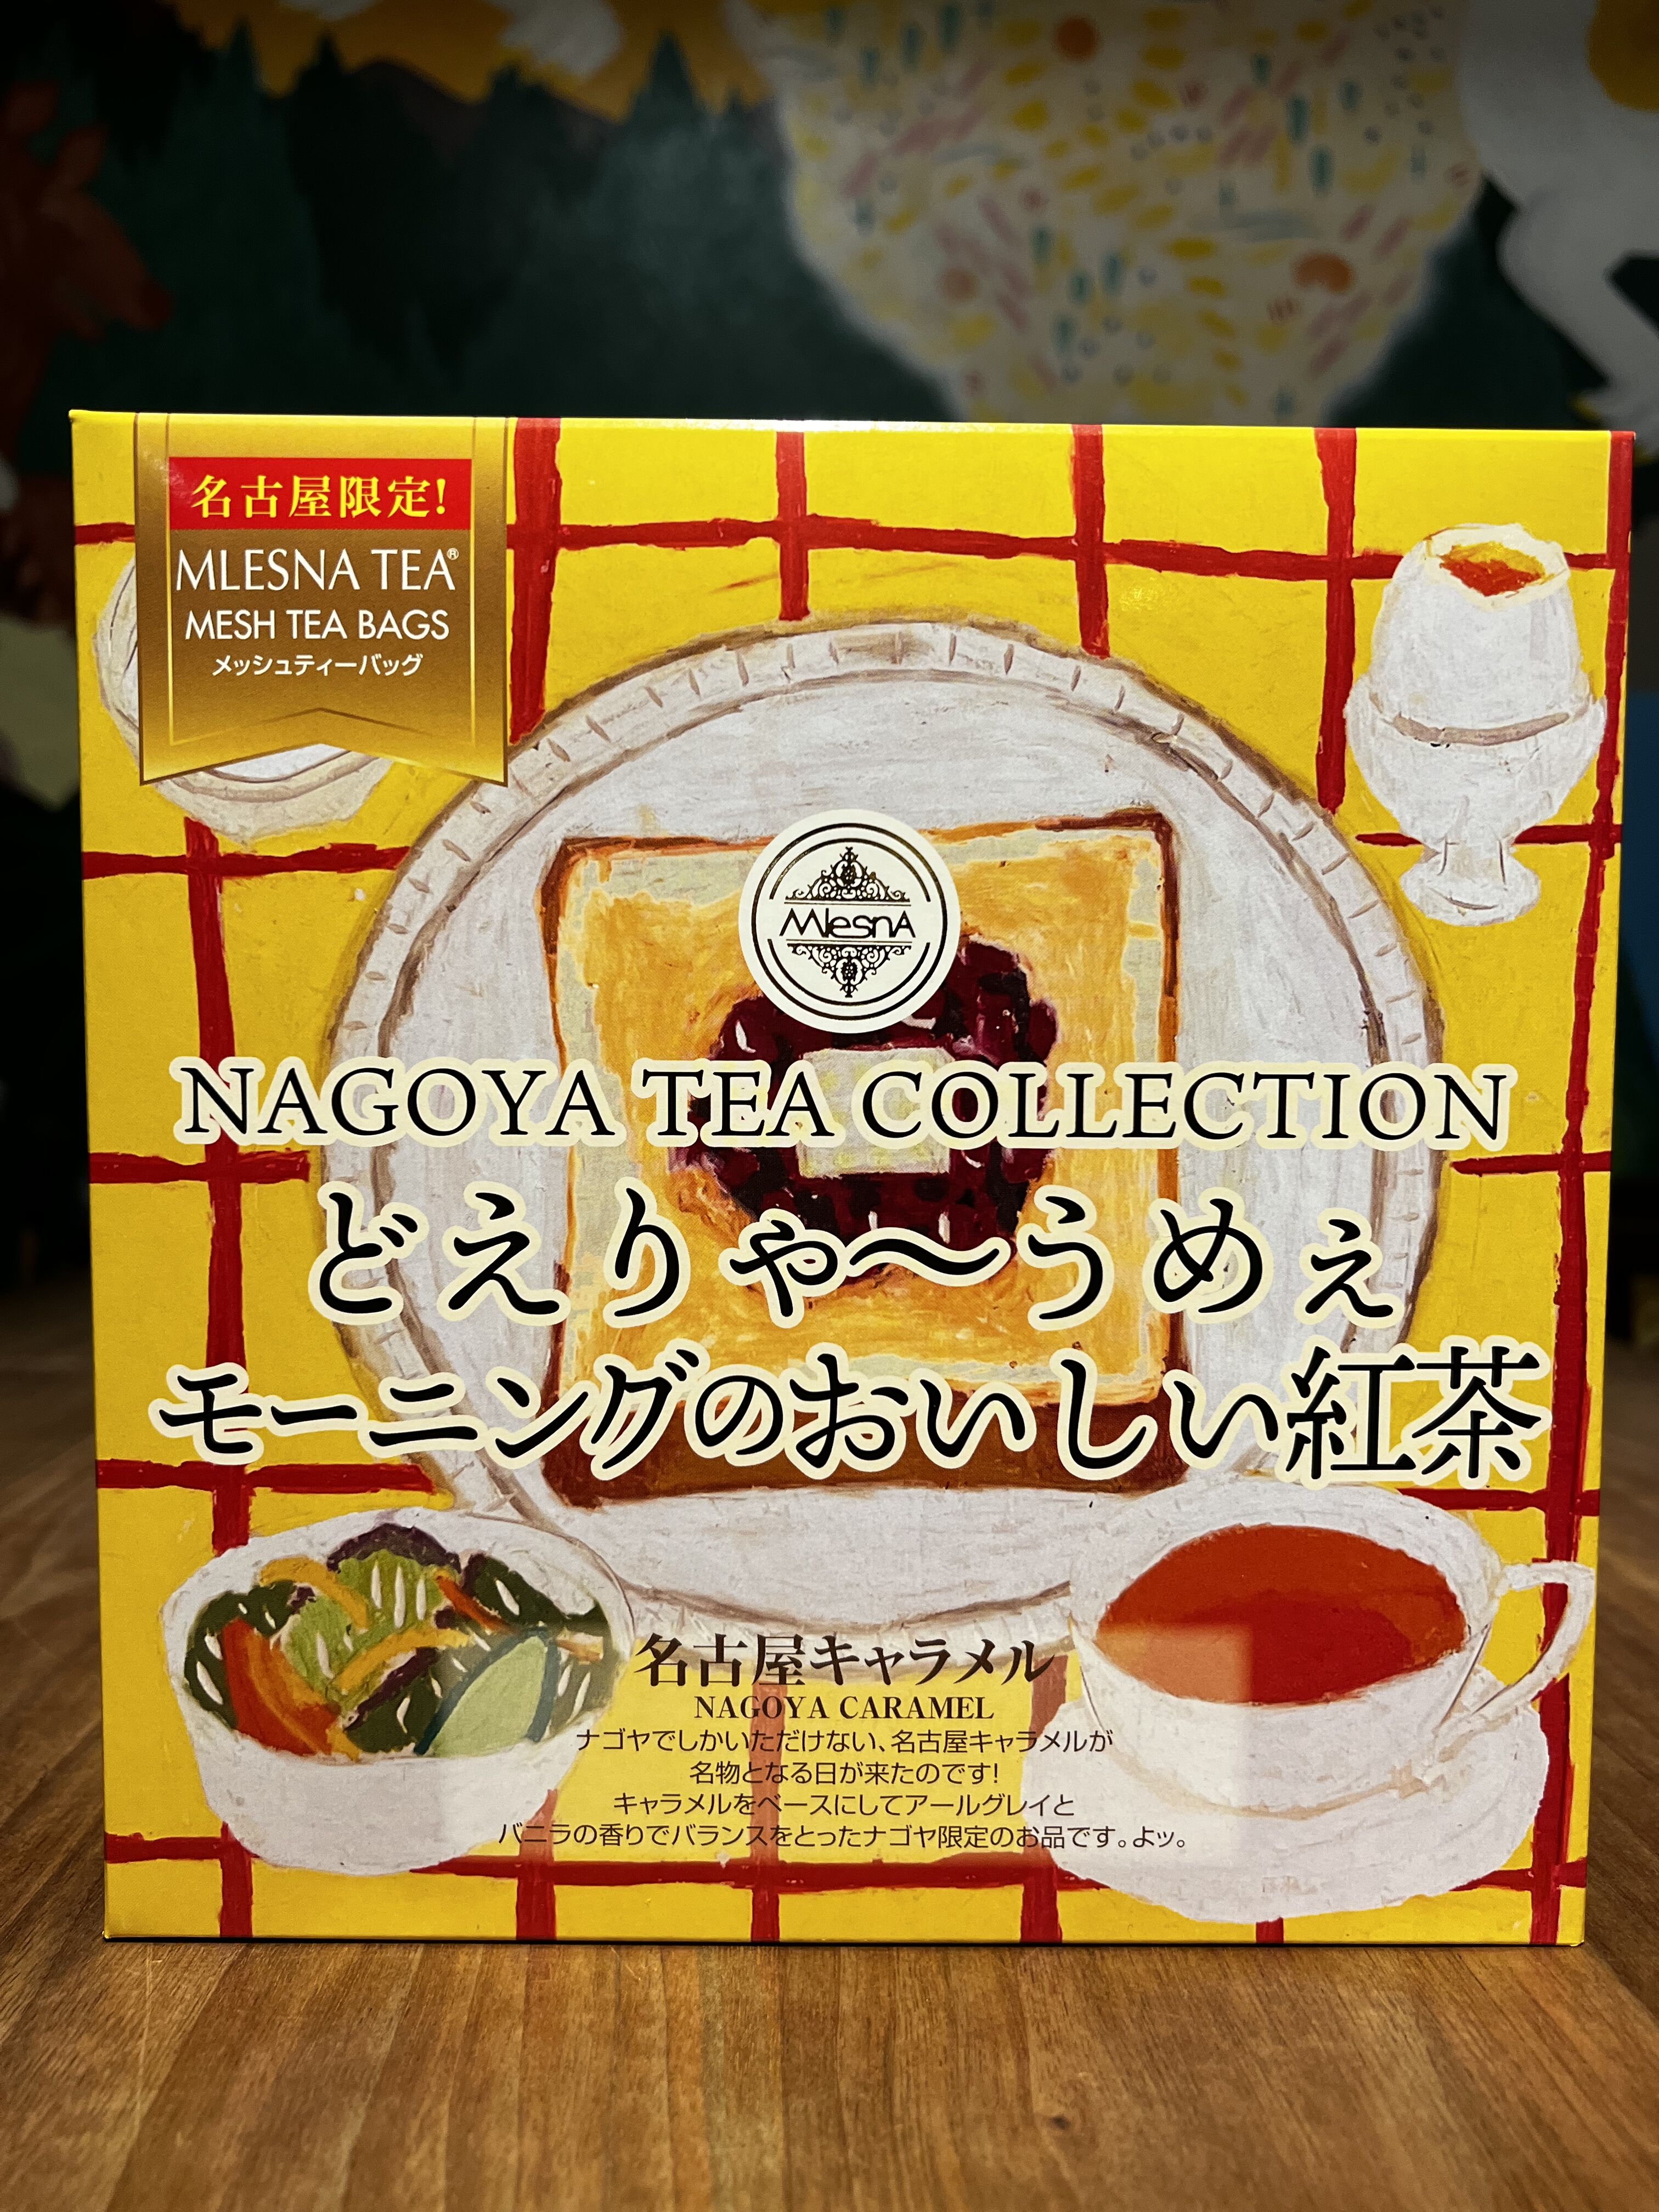 紅茶 ムレスナティー 名古屋キャラメル どえりゃ〜うめぇモーニングのおいしい紅茶